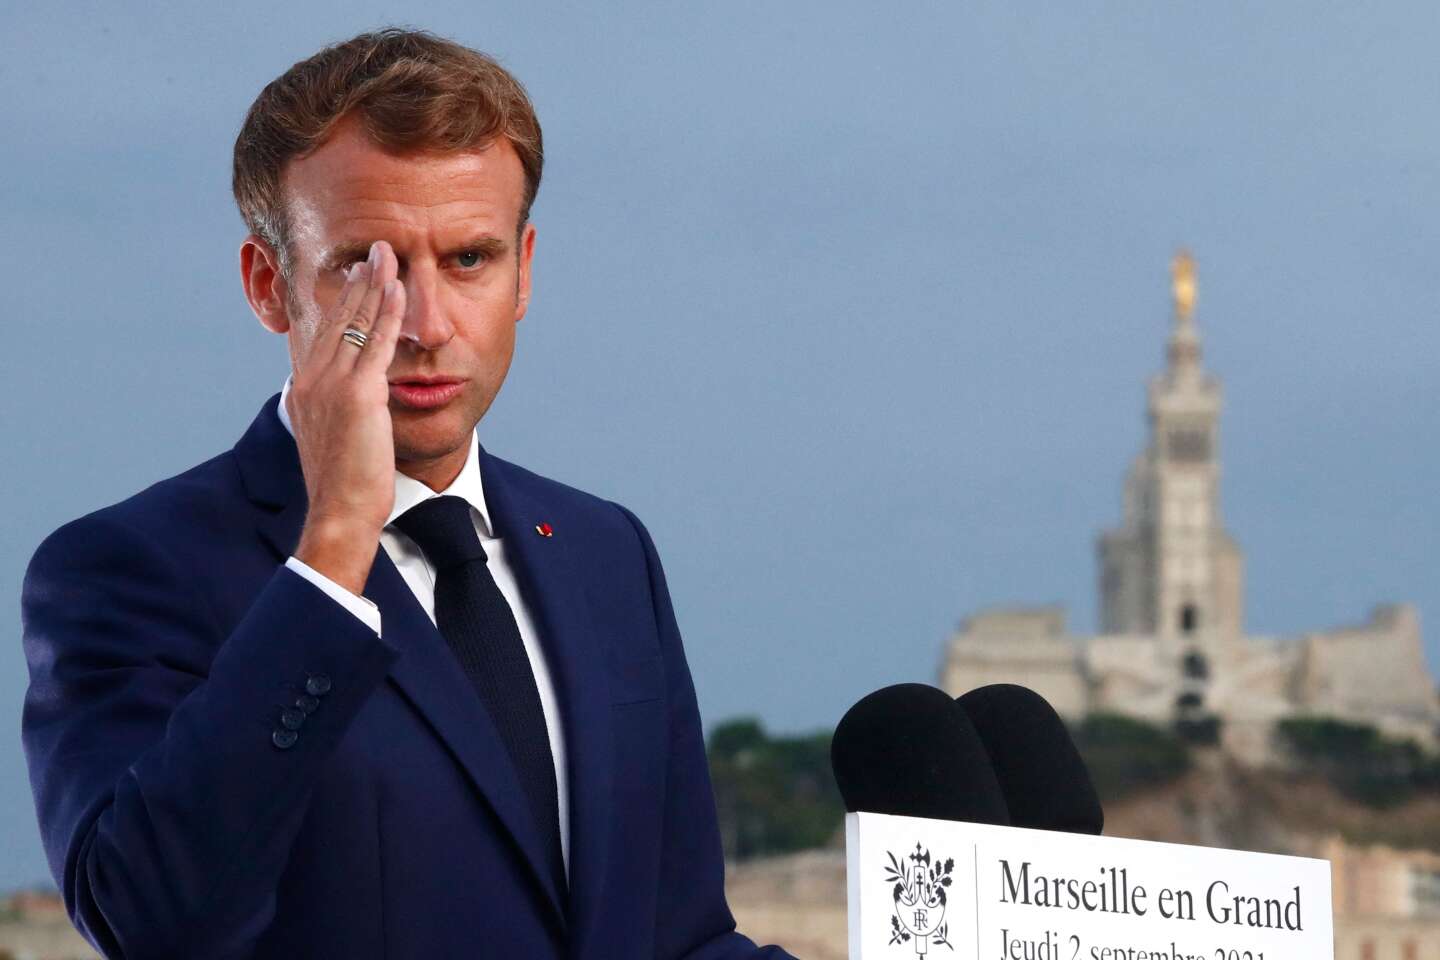 Plan Marseille en grand : Emmanuel Macron revient pour une visite de trois jours